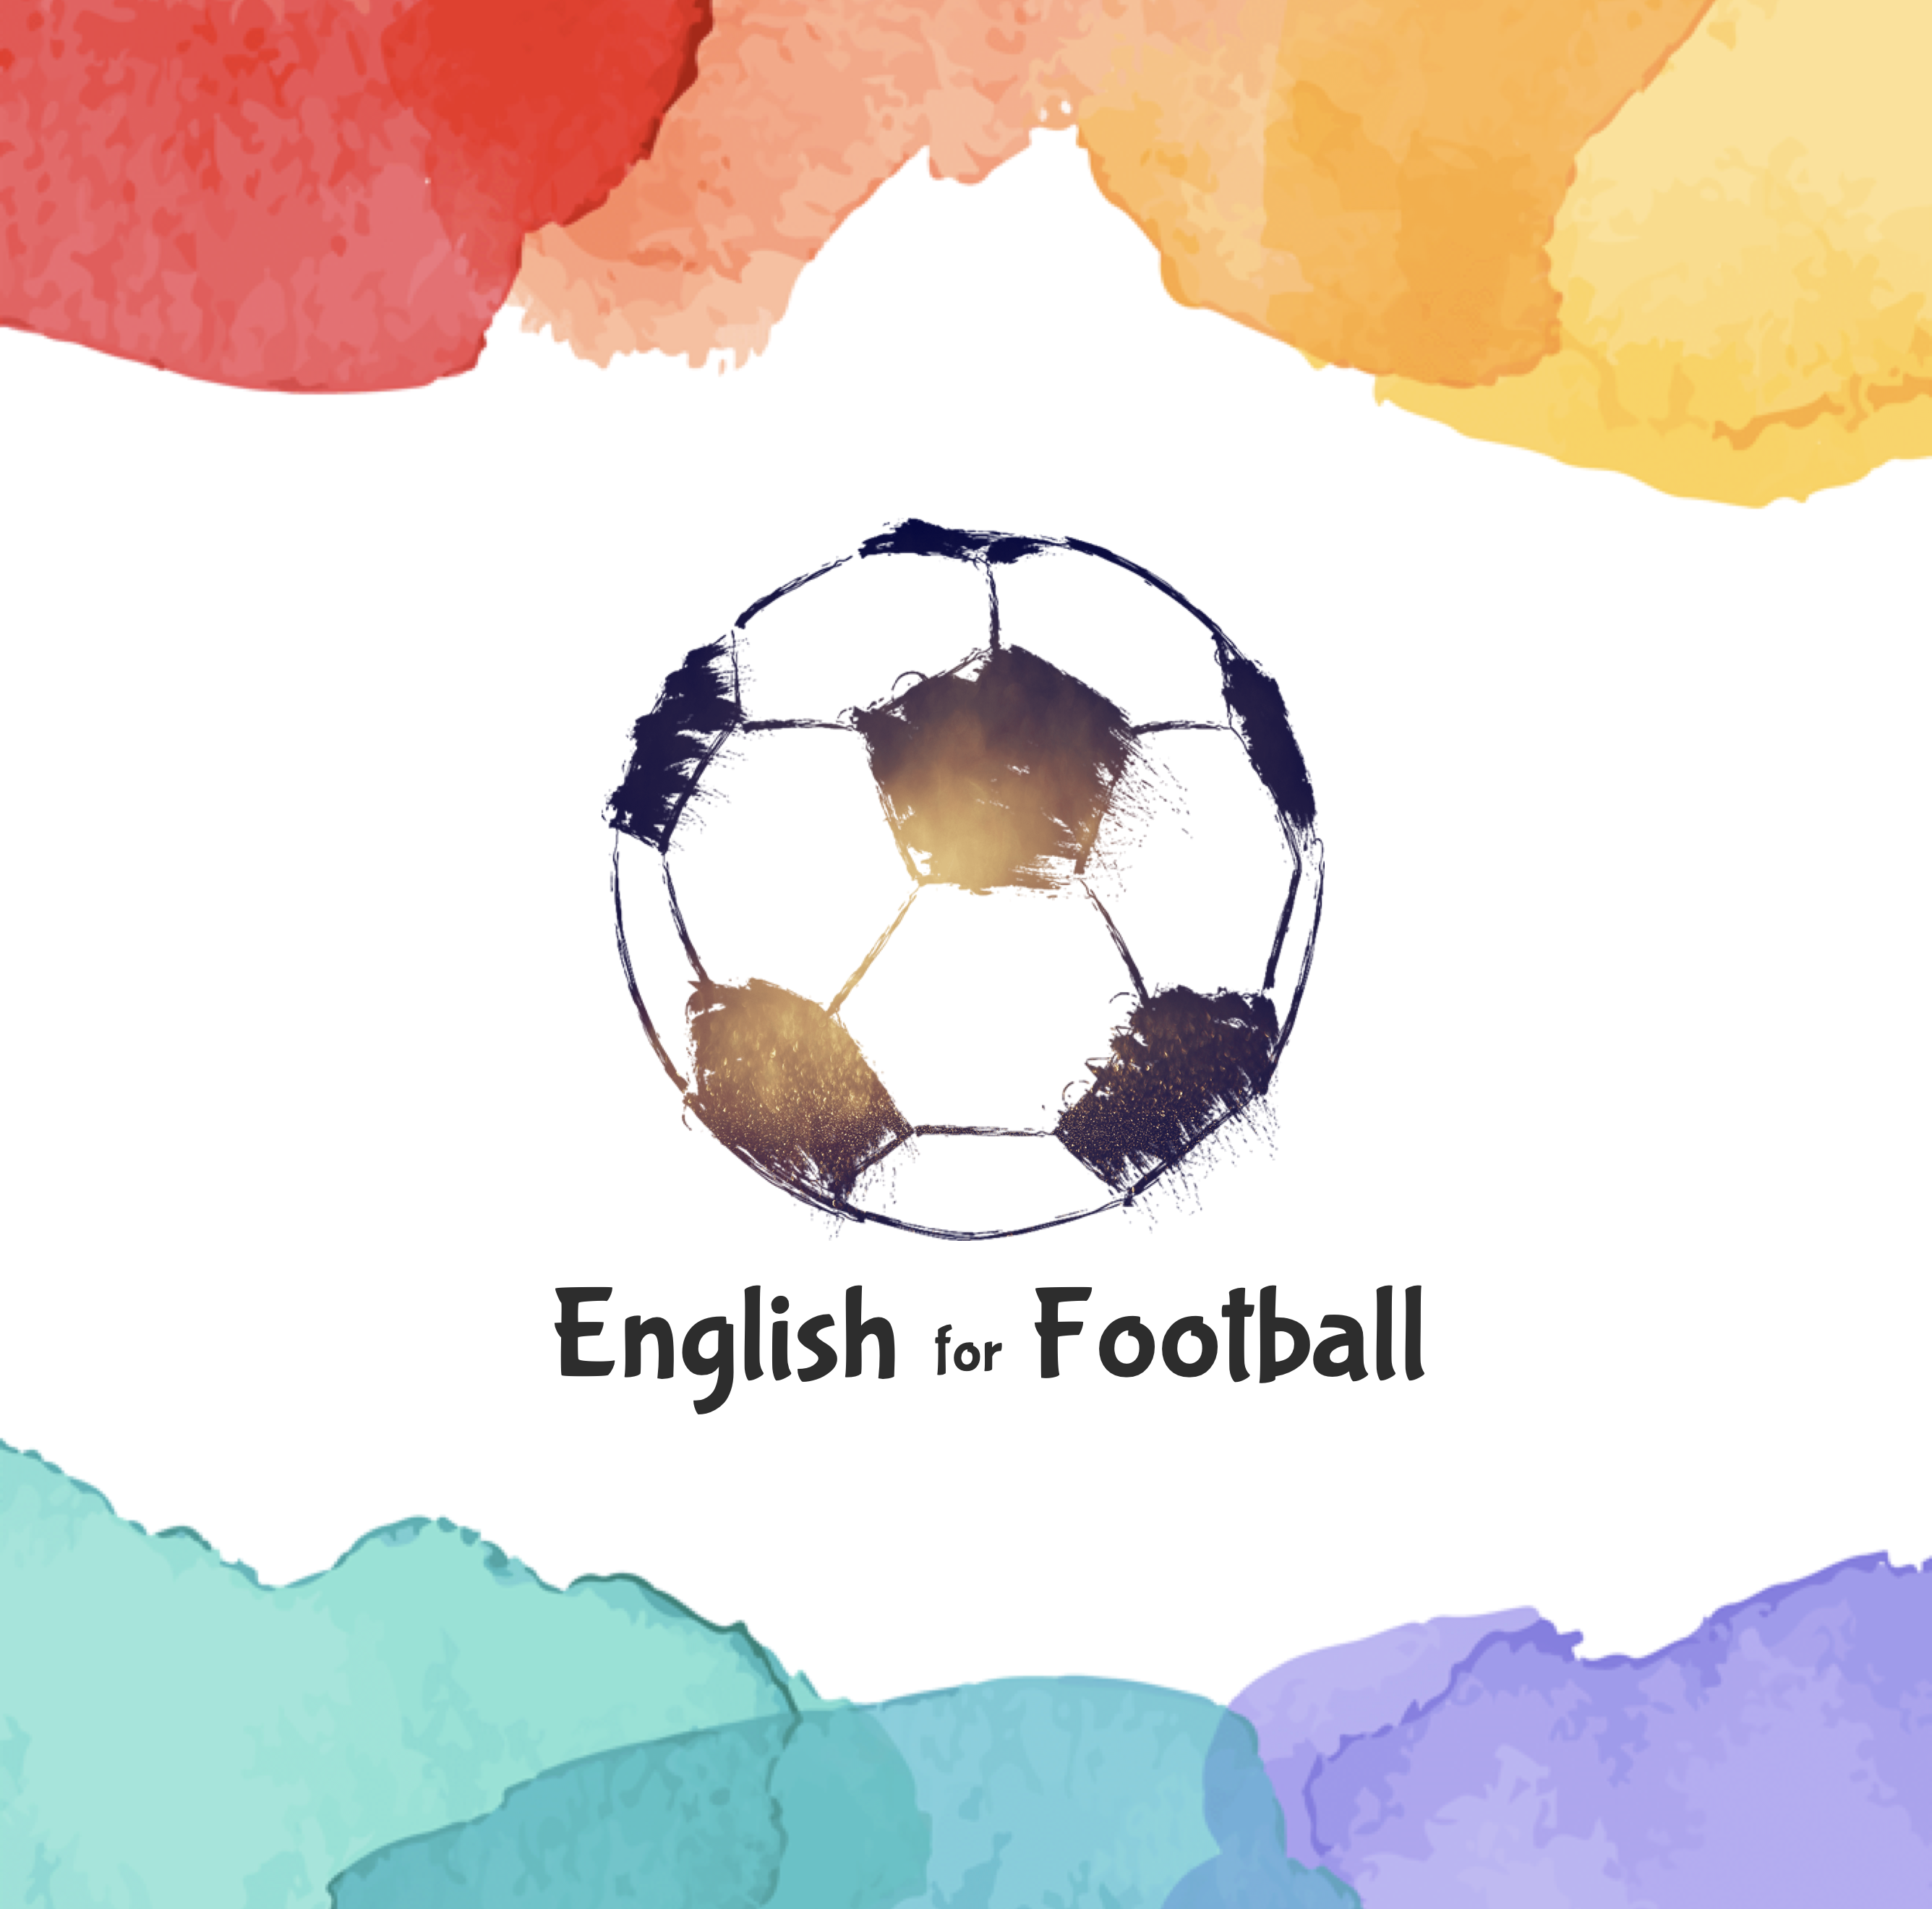 サッカーにおけるポジション 役割を表す英語ボキャブラリー50 サッカー英語 English For Football